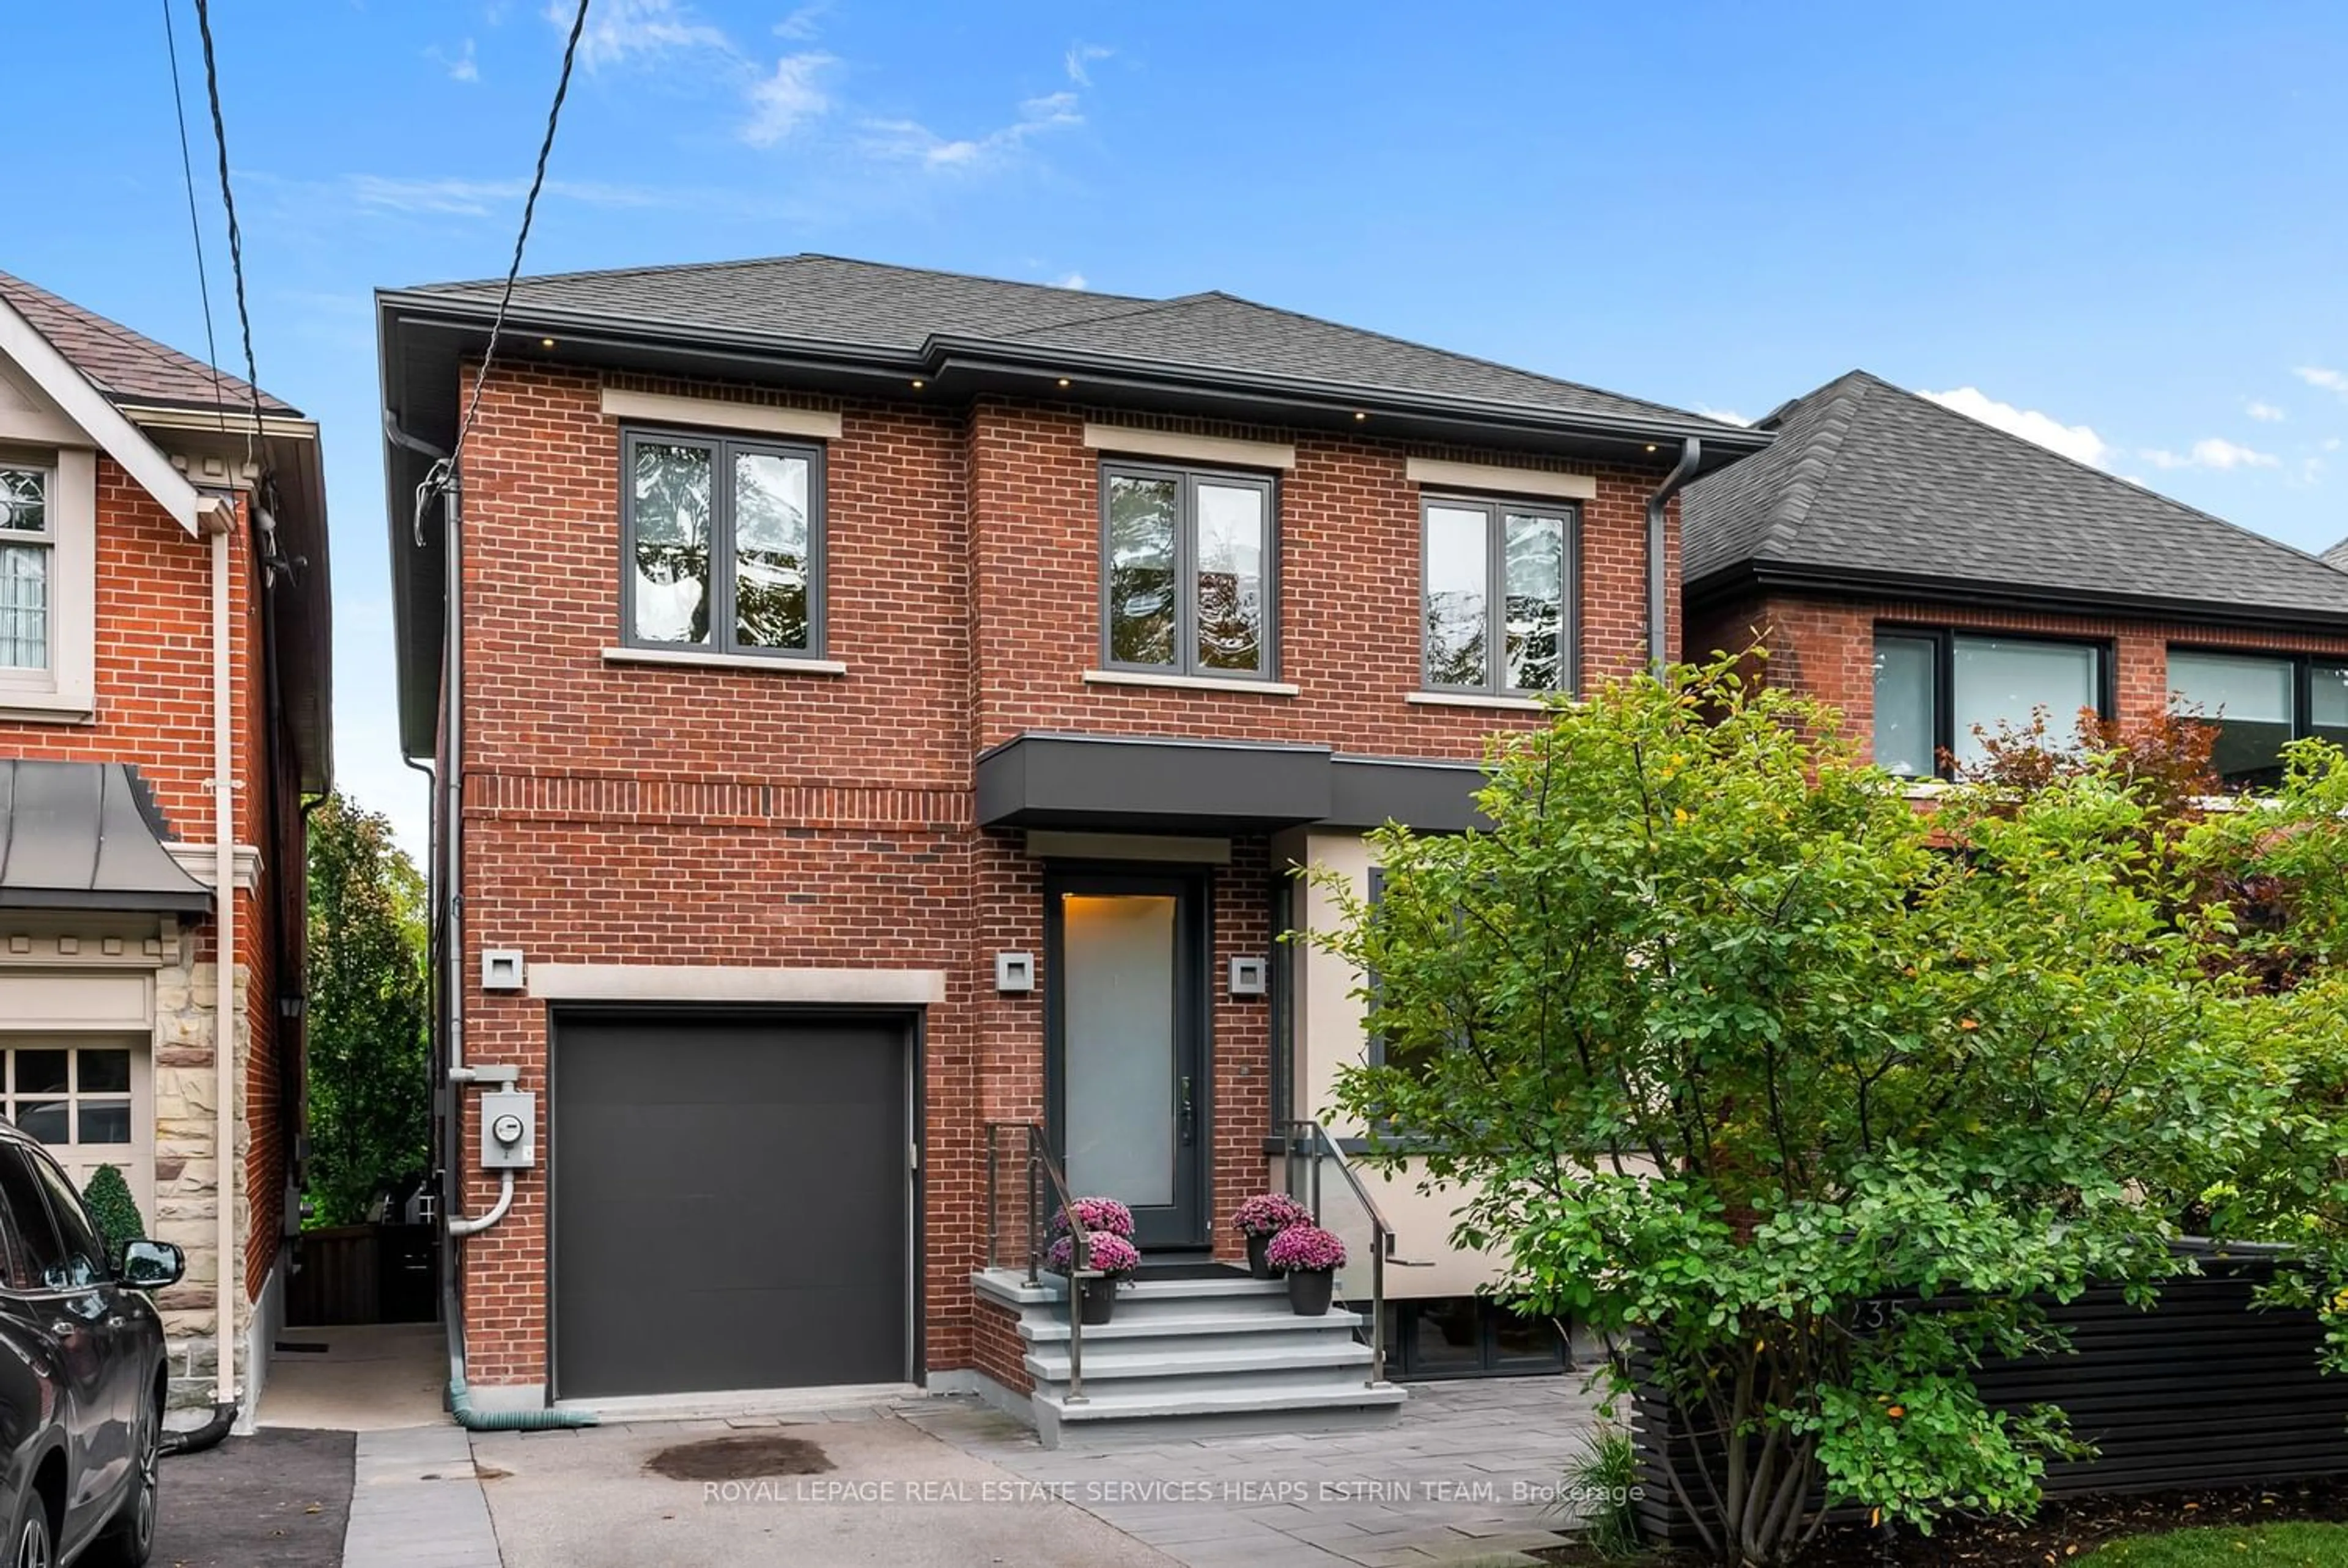 Home with brick exterior material for 235 Bessborough Dr, Toronto Ontario M4G 3K4